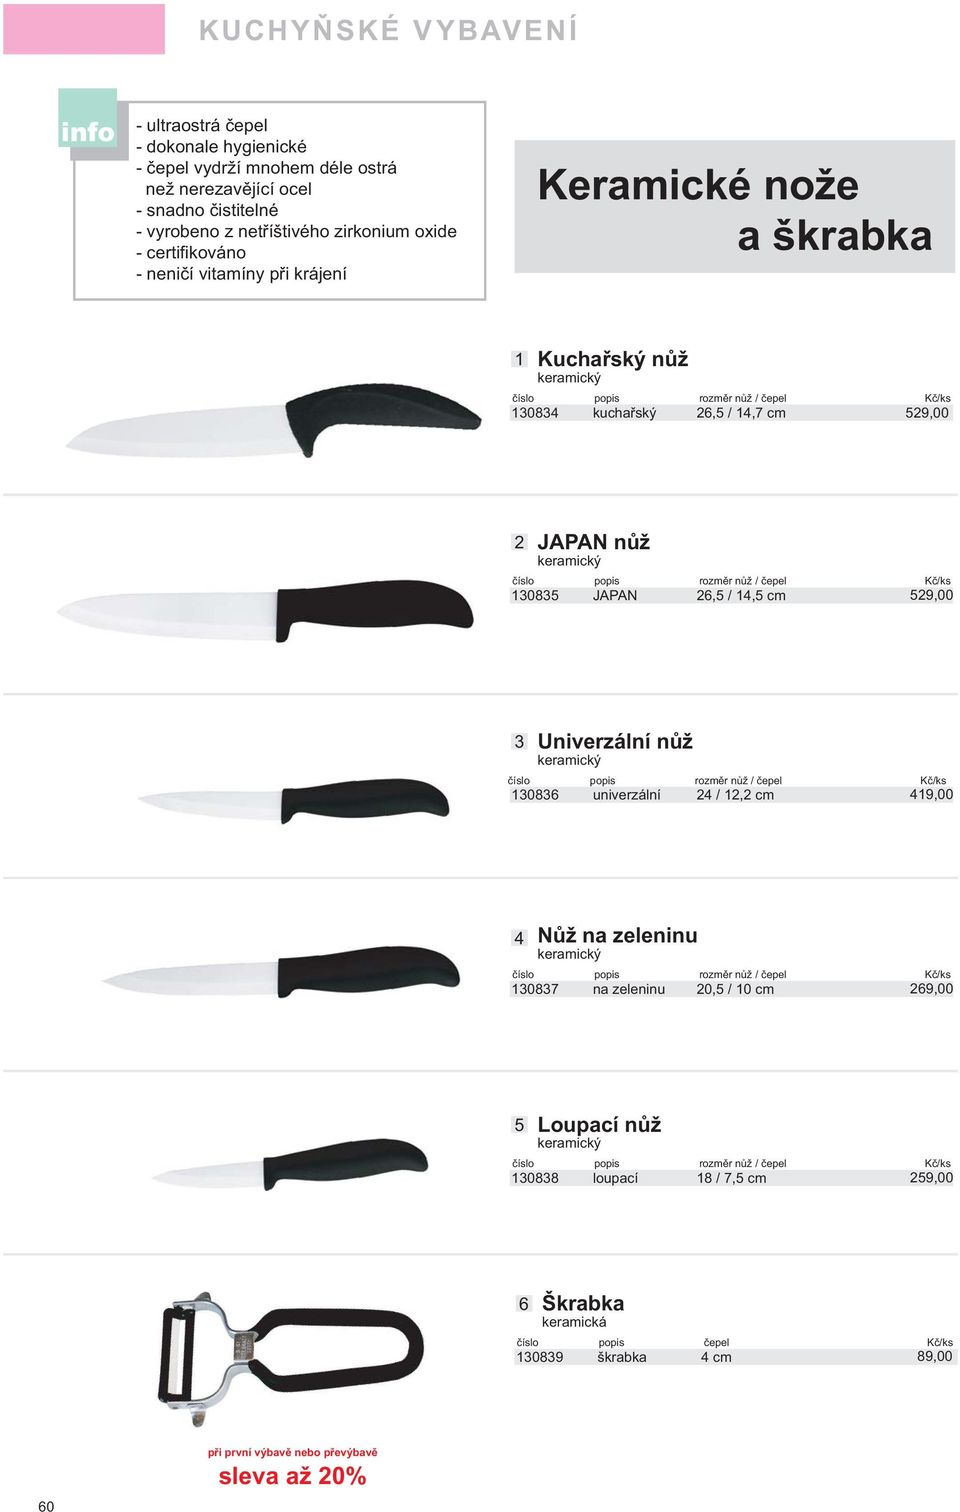 JAPAN, /, cm 9,00 Univerzální nůž keramický číslo popis rozměr nůž / čepel Kč/ks 08 univerzální /, cm 9,00 Nůž na zeleninu keramický číslo popis rozměr nůž / čepel Kč/ks 087 na zeleninu 0, / 0